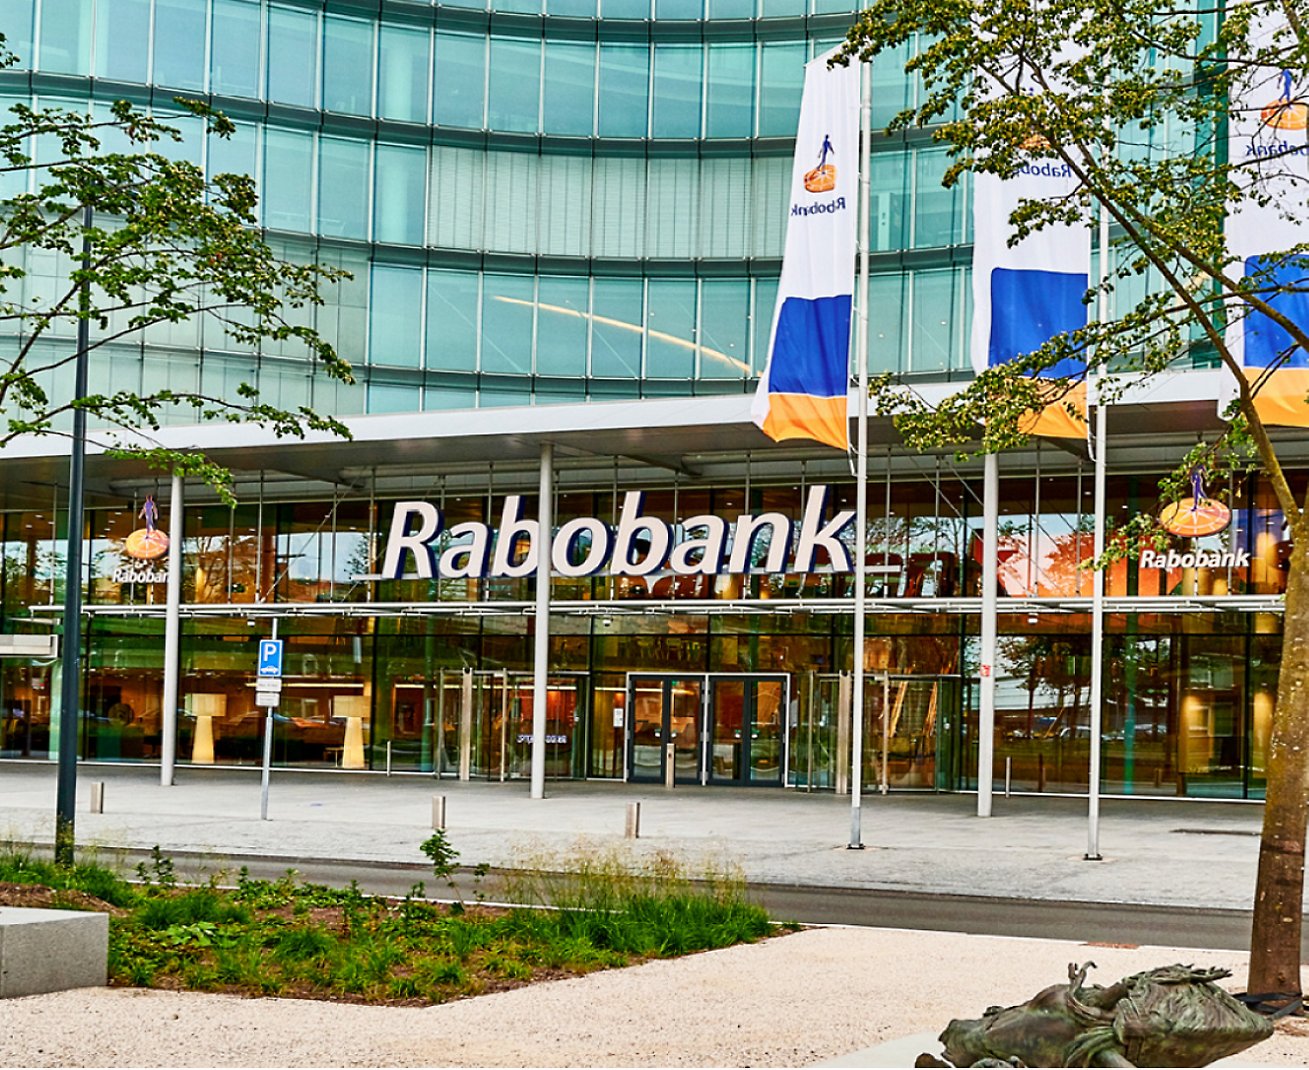 Üzerinde Rabobank yazan bir tabela bulunan bir bina.